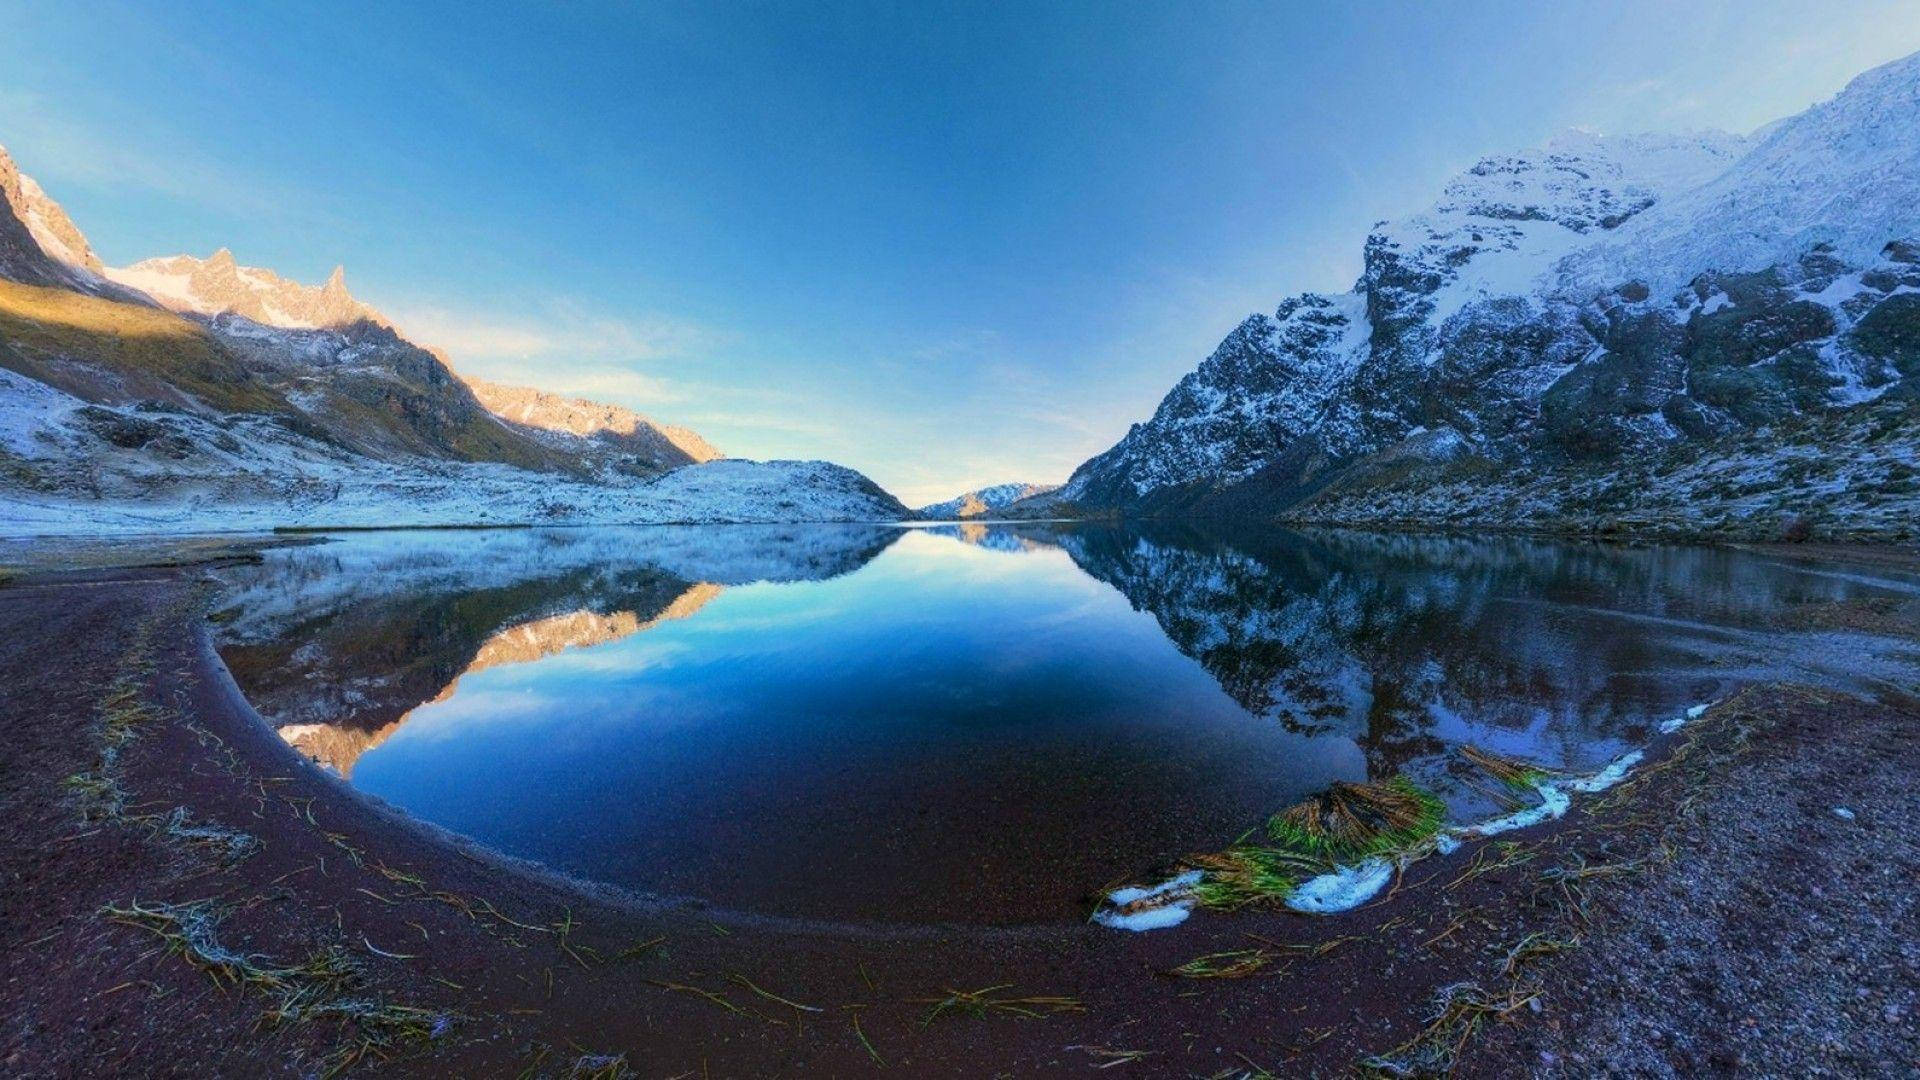 Peruparon Icy Lake Skulle Kunna Vara En Fantastisk Bild För Ditt Skrivbords- Eller Mobilskärms Bakgrund. Wallpaper